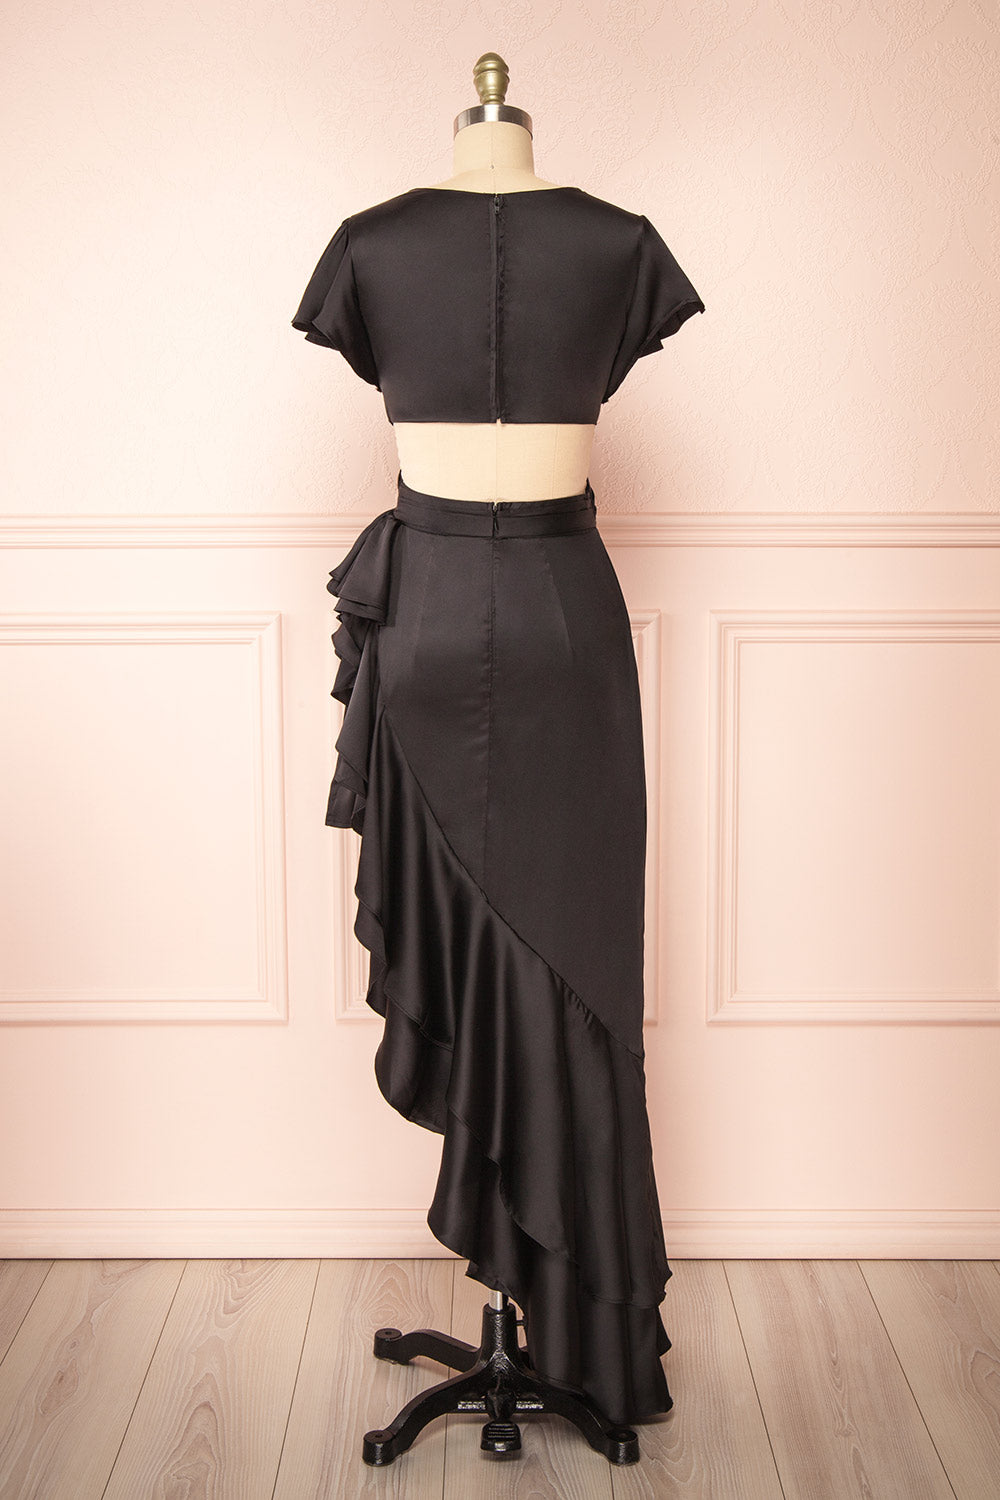 Eirlys Black Asymmetrical Satin Dress w/ Ruffles | Boutique 1861 back view